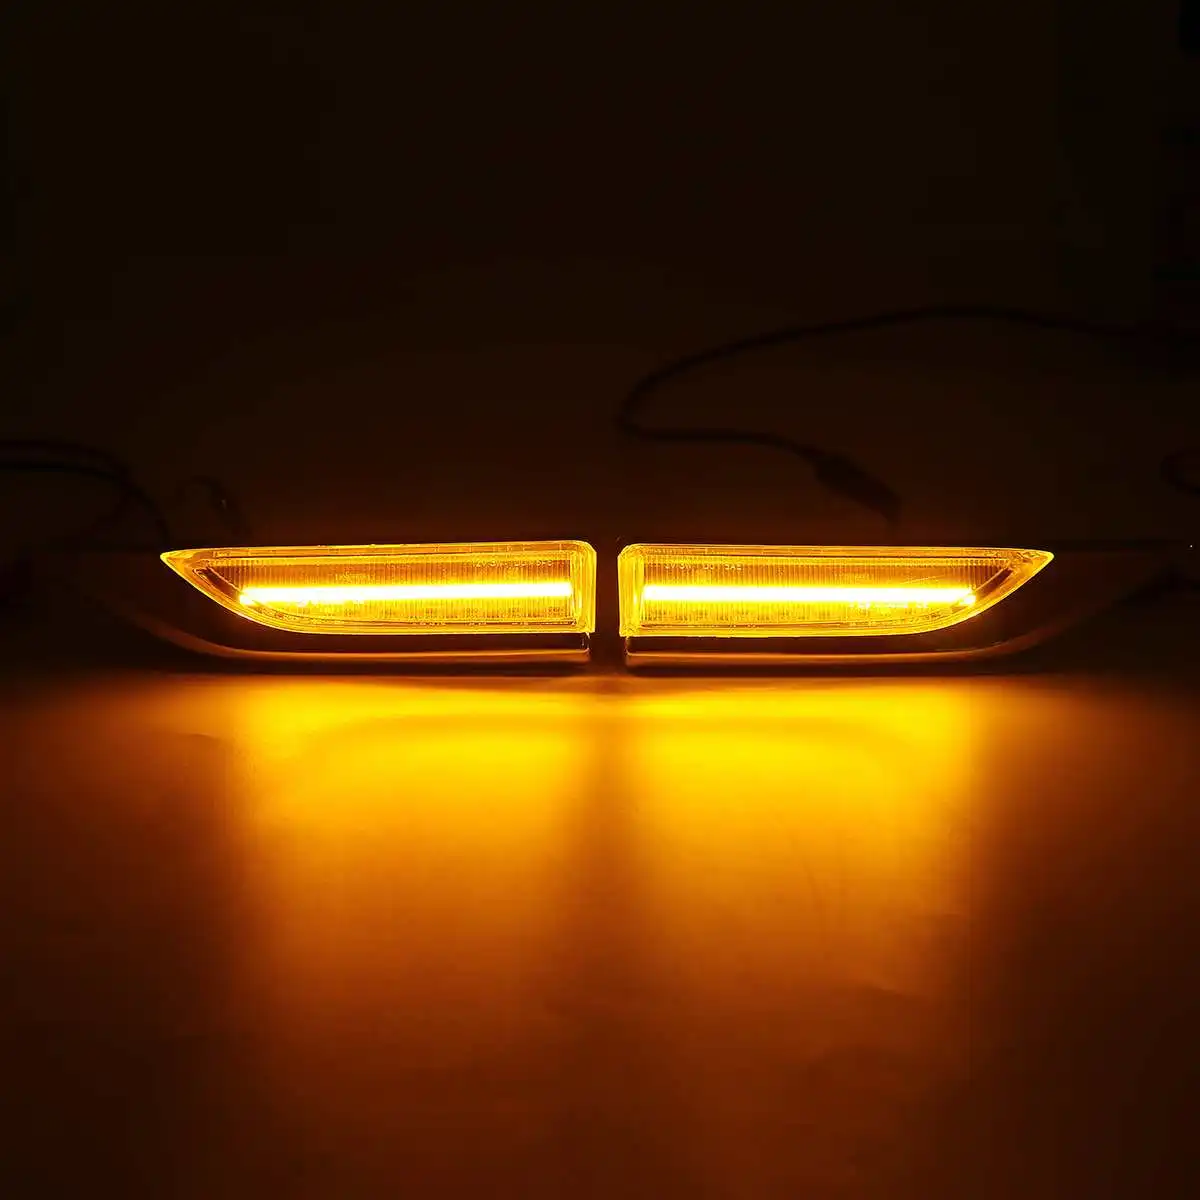 2x Dinámica del LED Luces de posición Laterales de 12V que Fluye de la Señal de Giro Luz Secuencial Intermitente para VW Transporter T6 MK VI Carrito de MK4 3